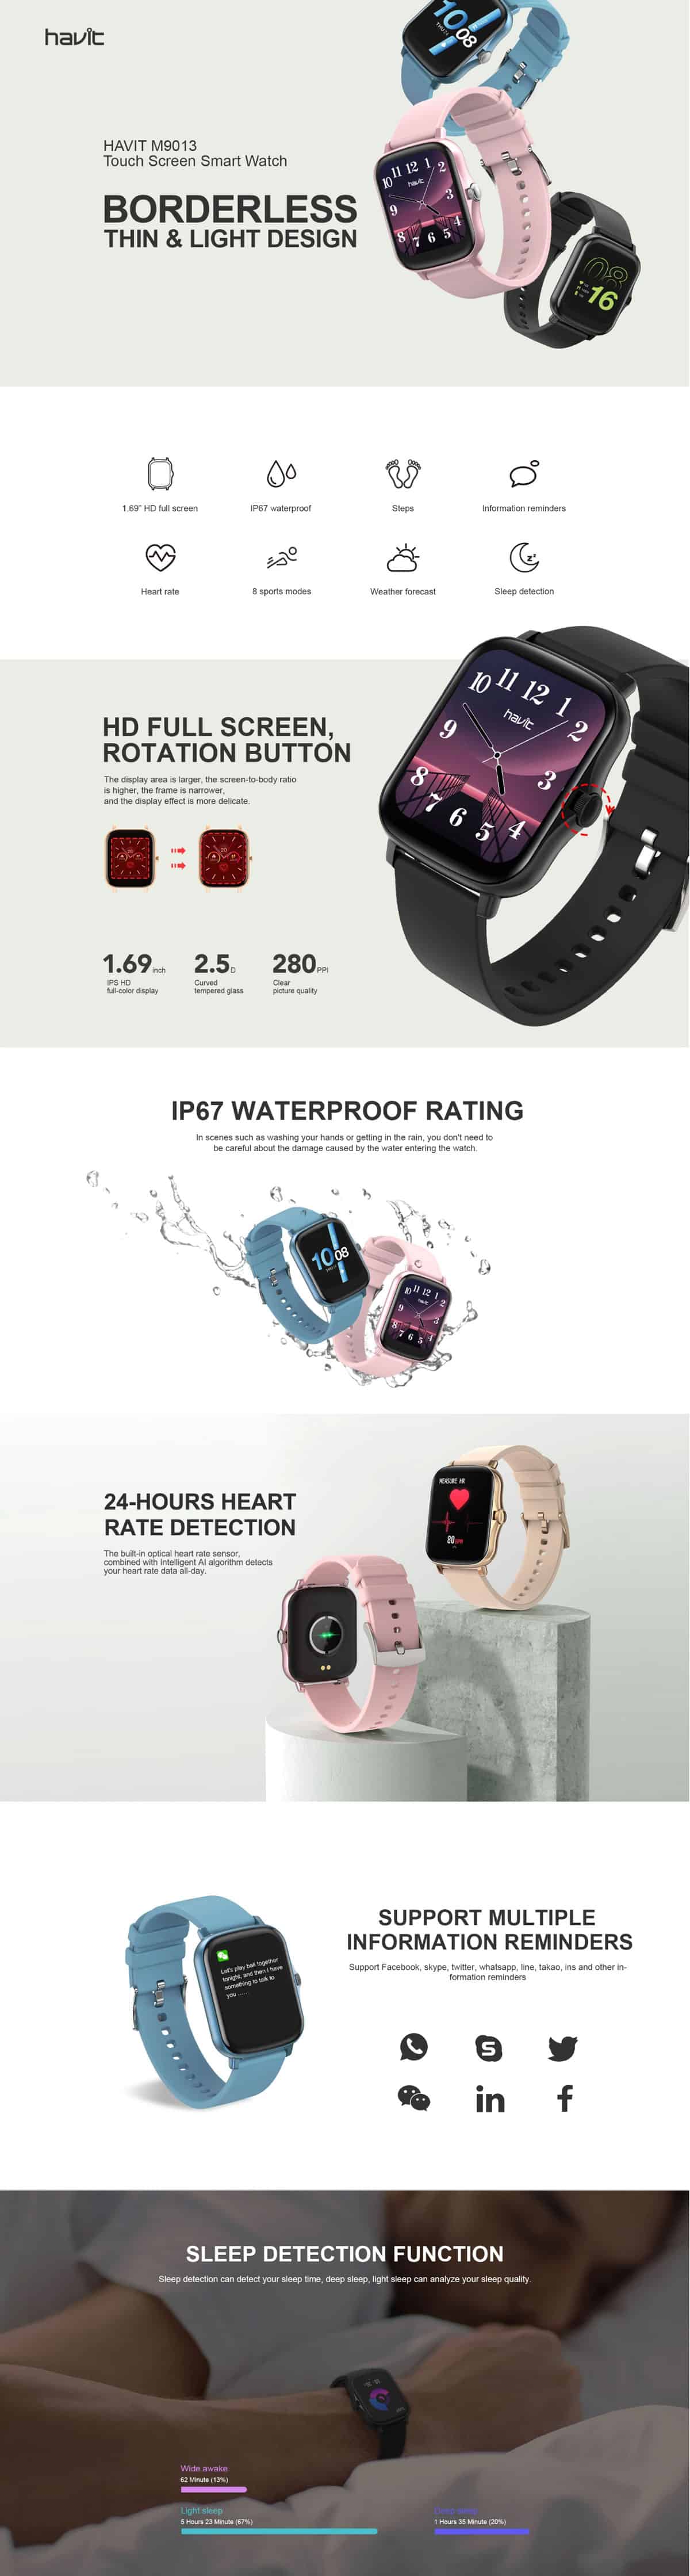 Havit M9013 Smart Watch 5